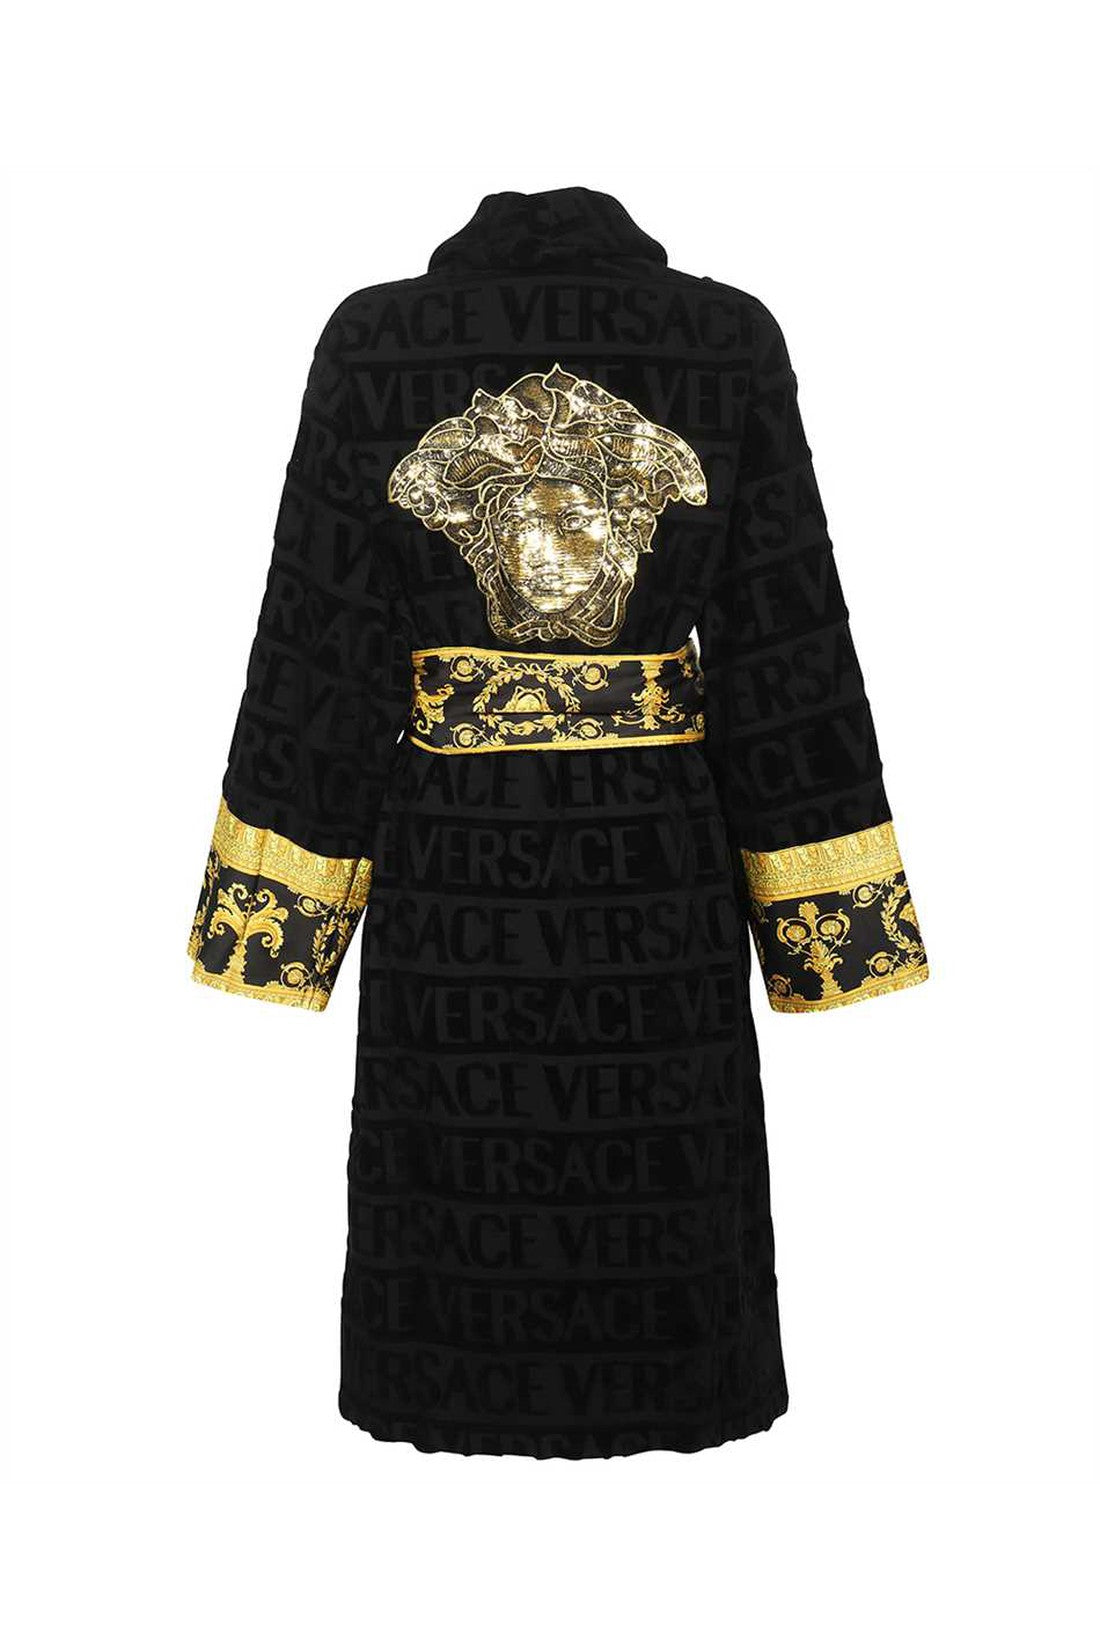 Versace-OUTLET-SALE-Cotton-bathrobe-Accessoires-ARCHIVE-COLLECTION-2.jpg